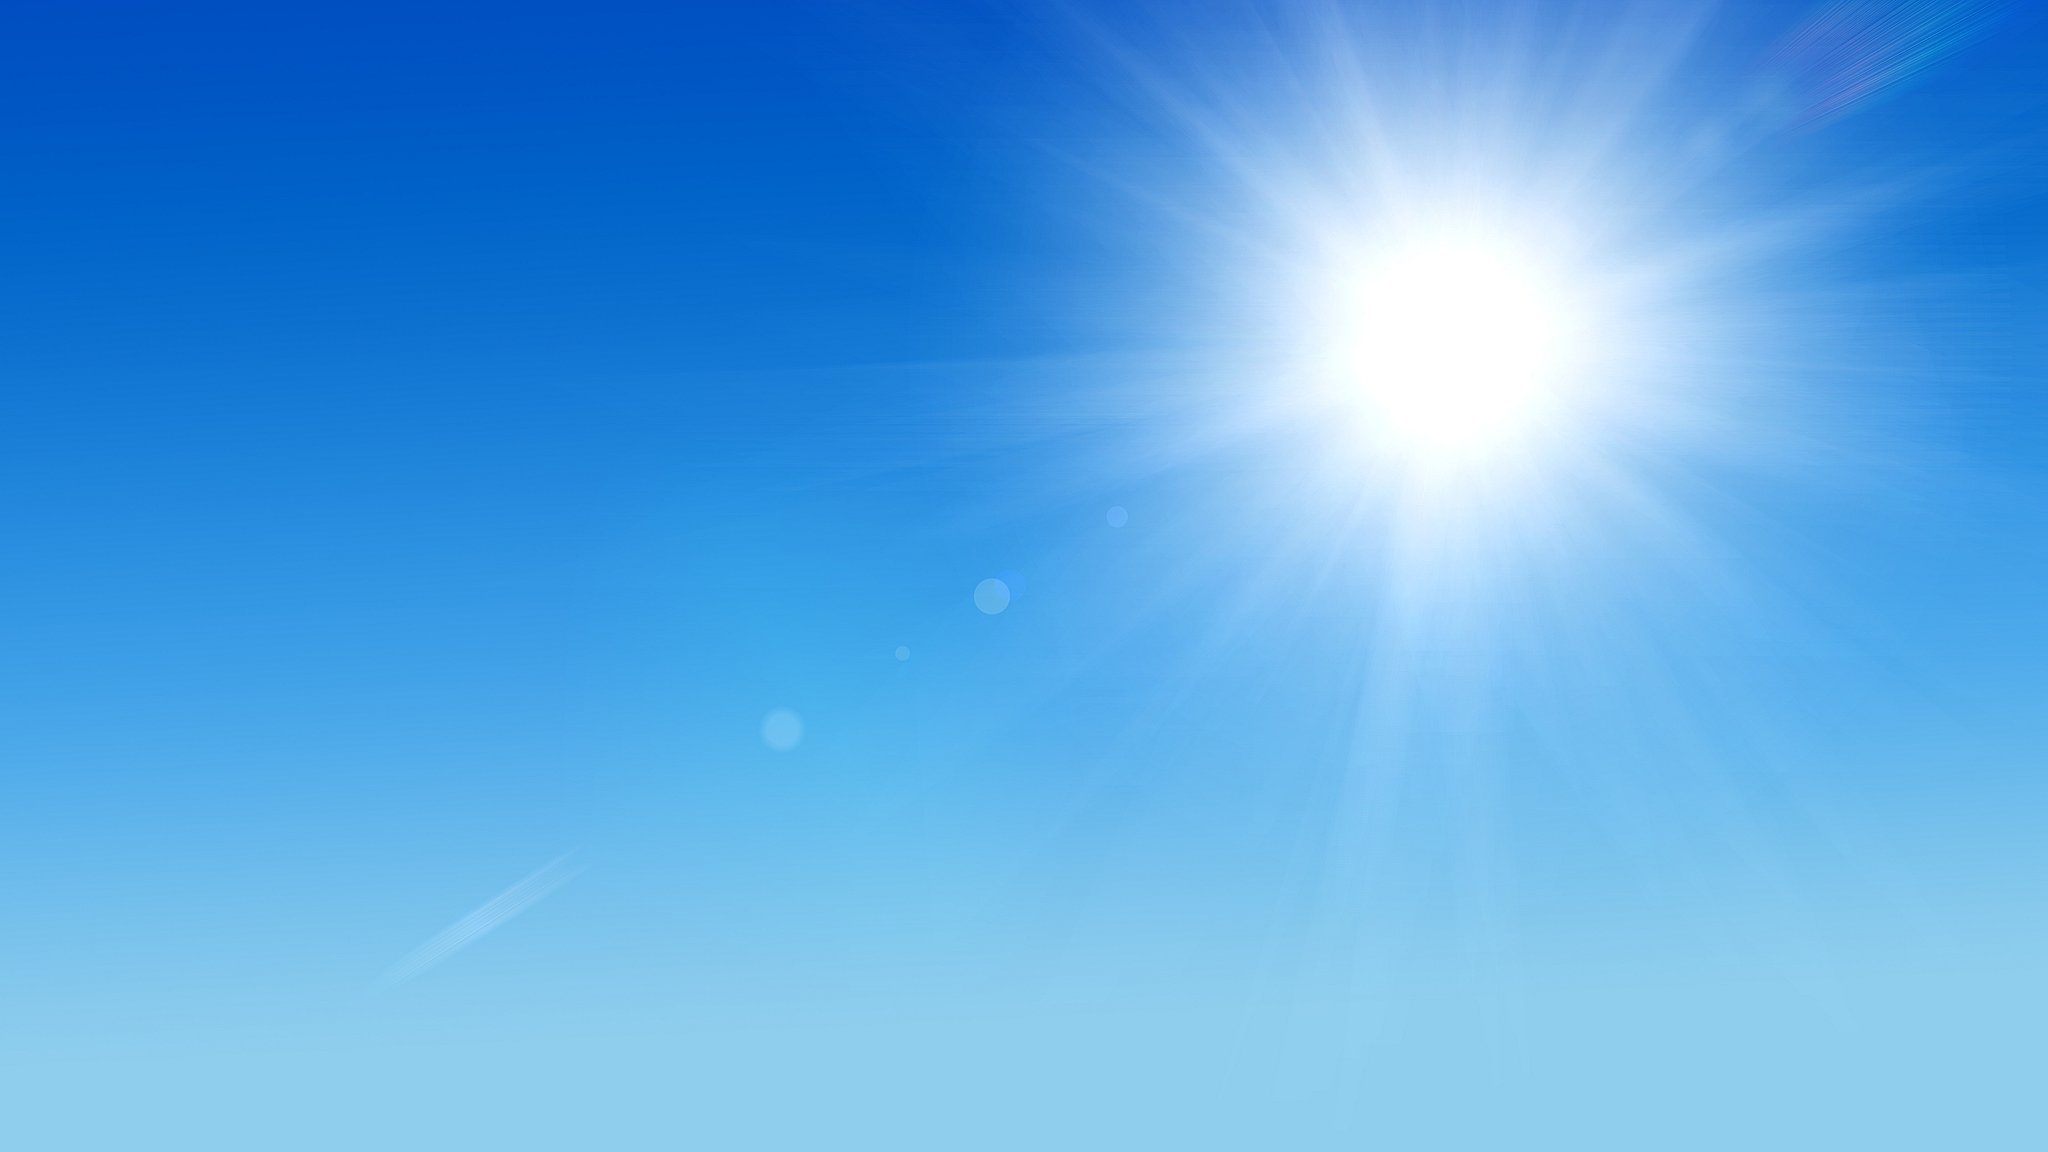 Meteo Sciara: oggi domenica 27 Agosto sereno con assenza di nubi, previsto caldo intenso.